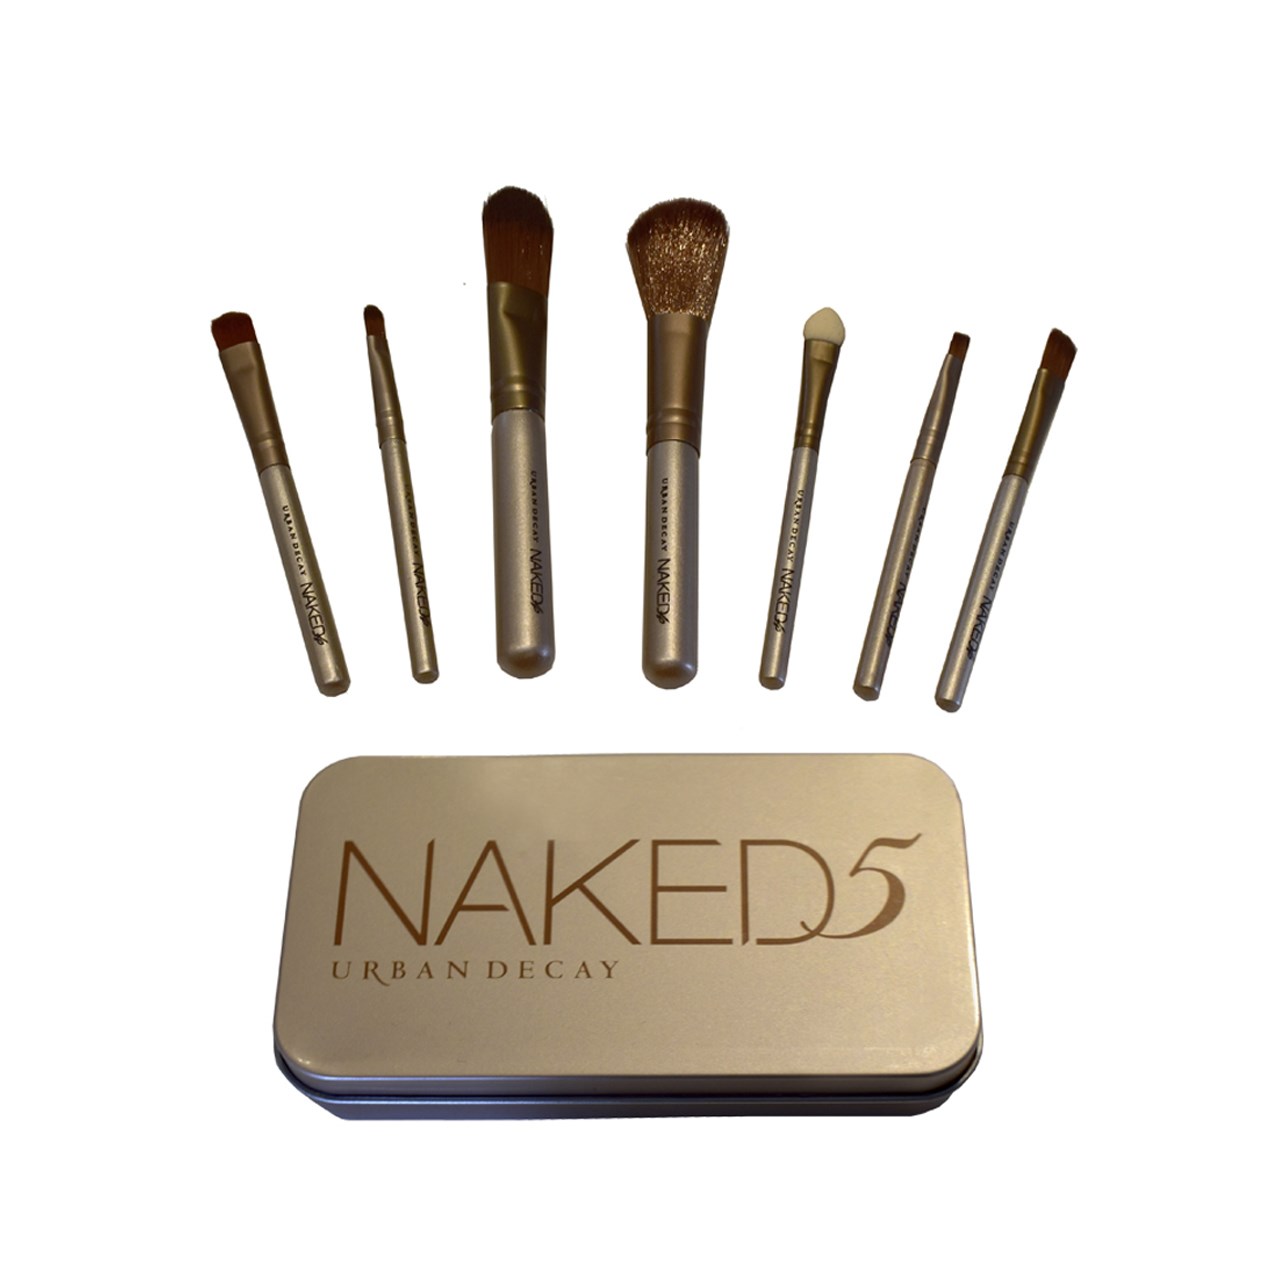 آنباکس ست براش آرایشی اربن دیکی مدل Naked مجموعه 7 عددی توسط مریم ربیعی در تاریخ ۱۸ مهر ۱۳۹۹